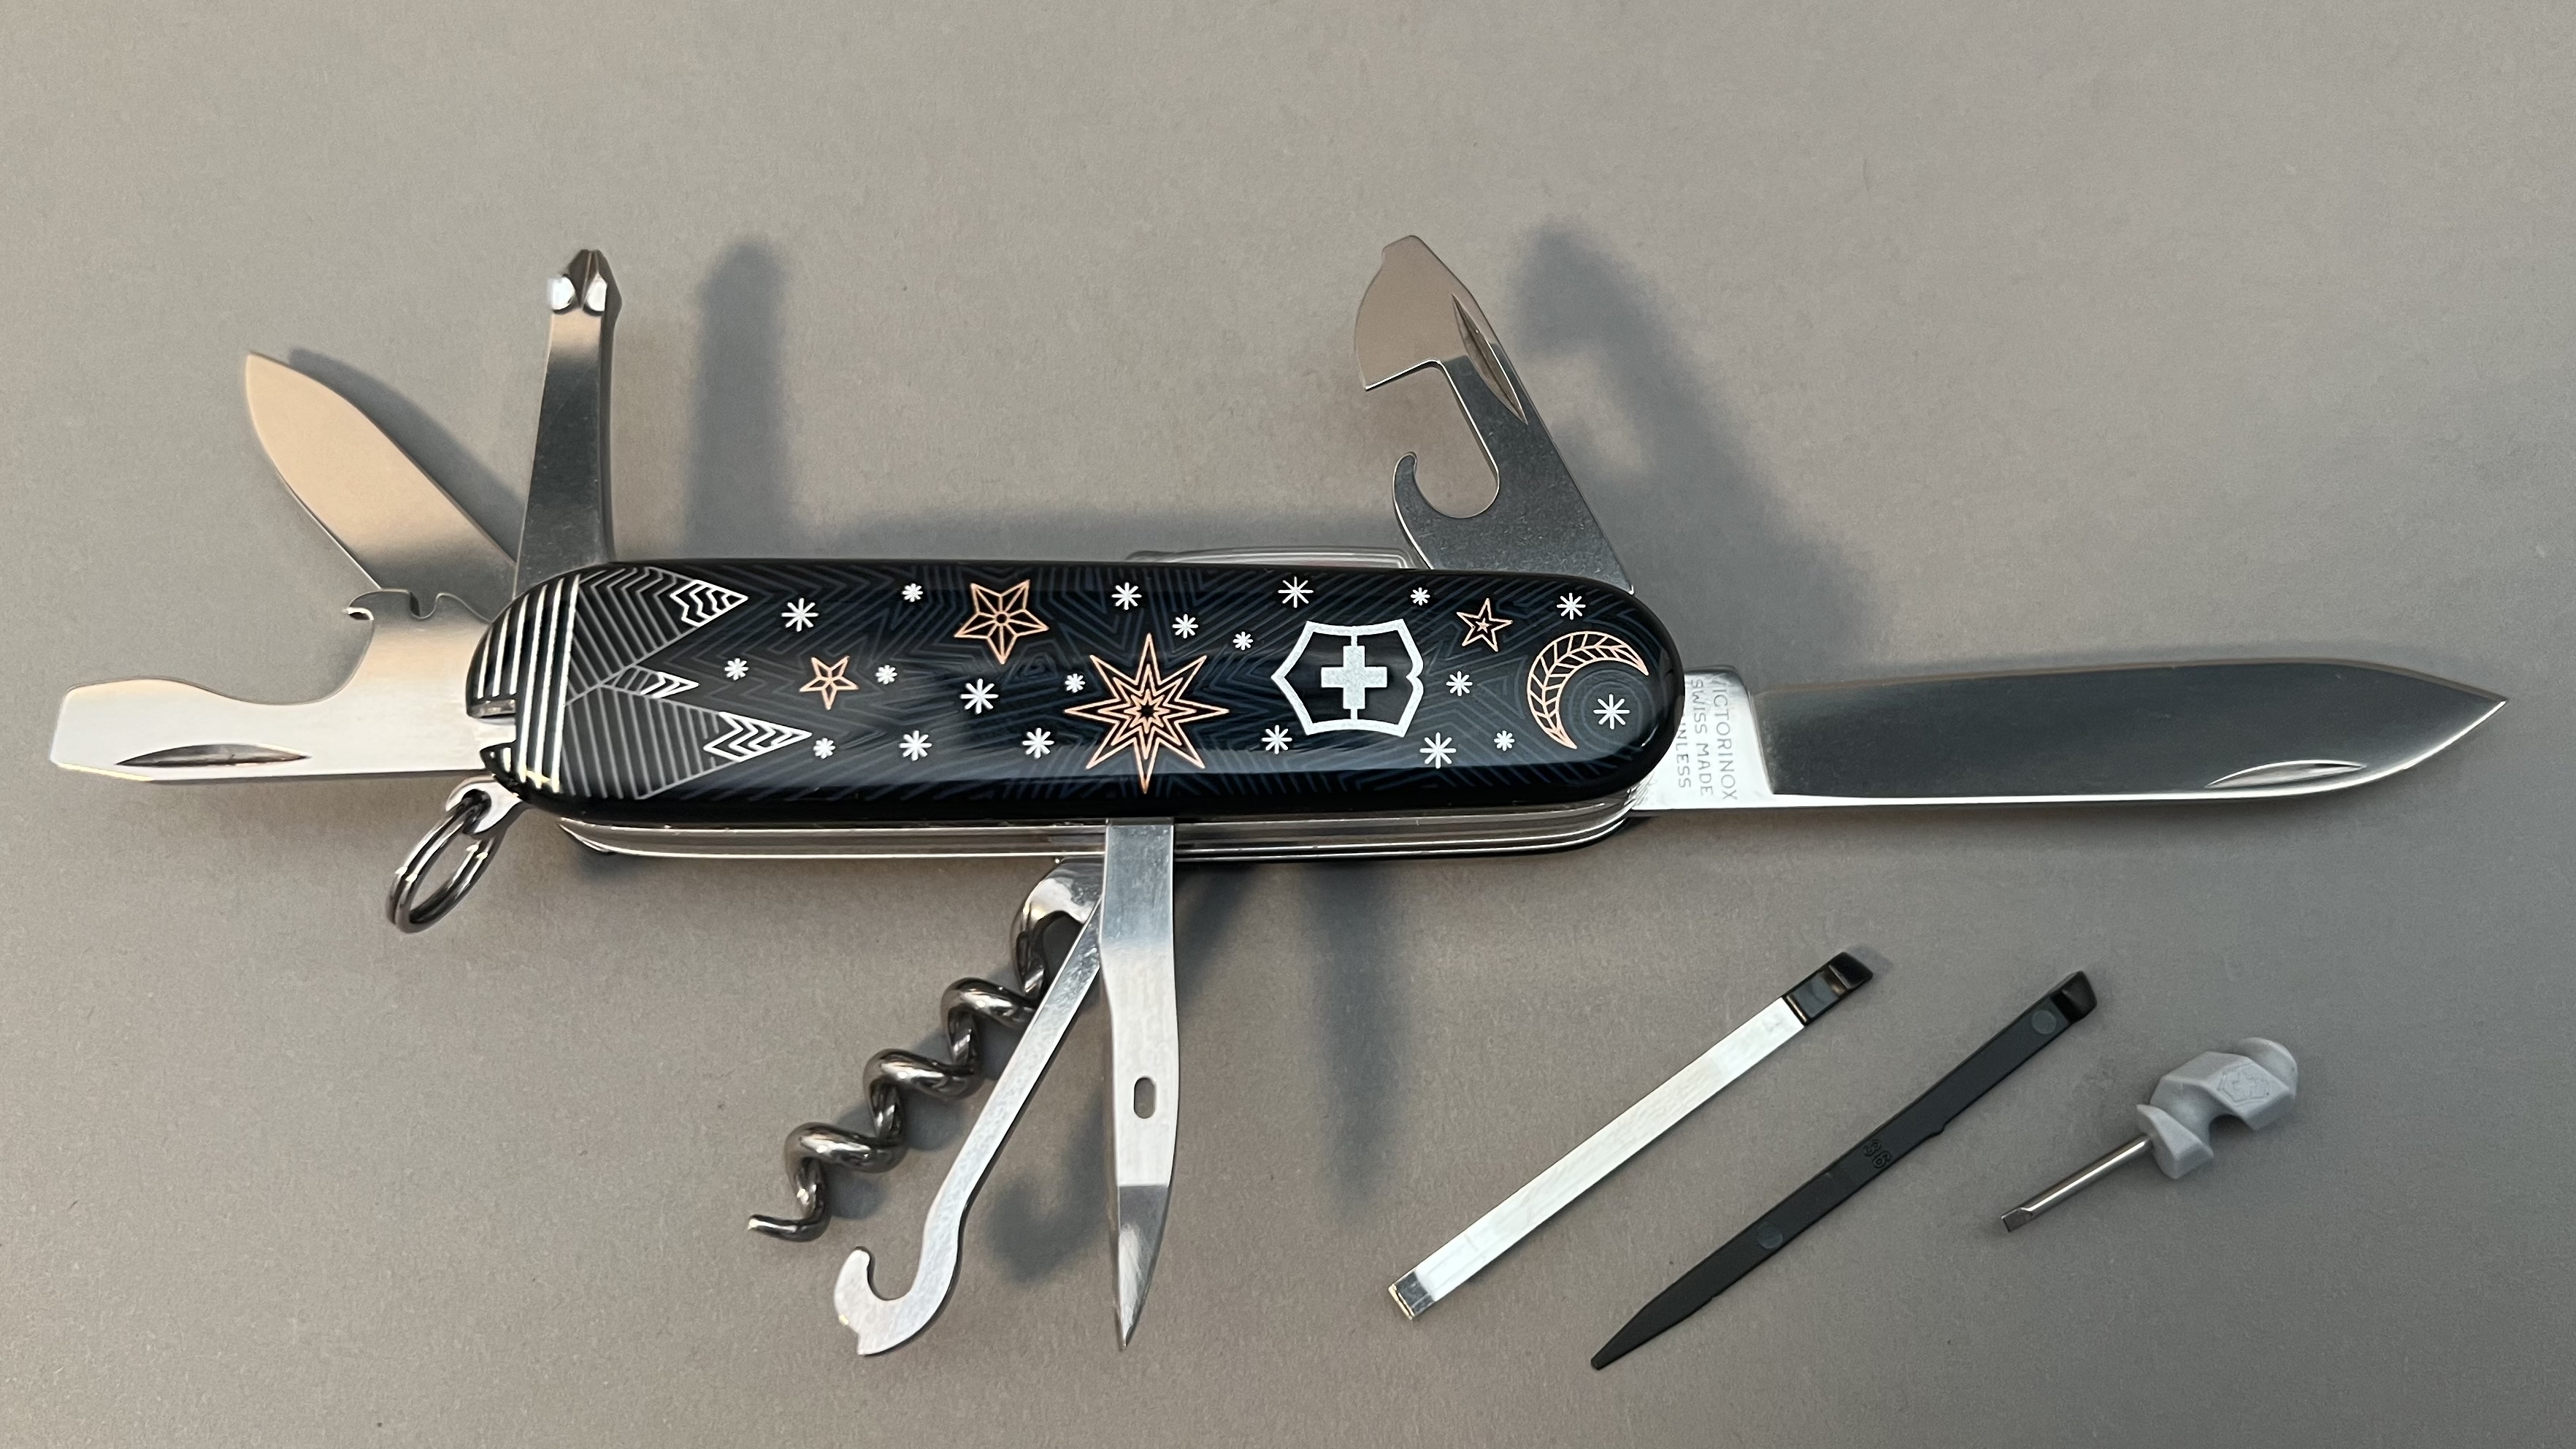 Couteau suisse Victorinox climber lite winter magic spécial édition 2021